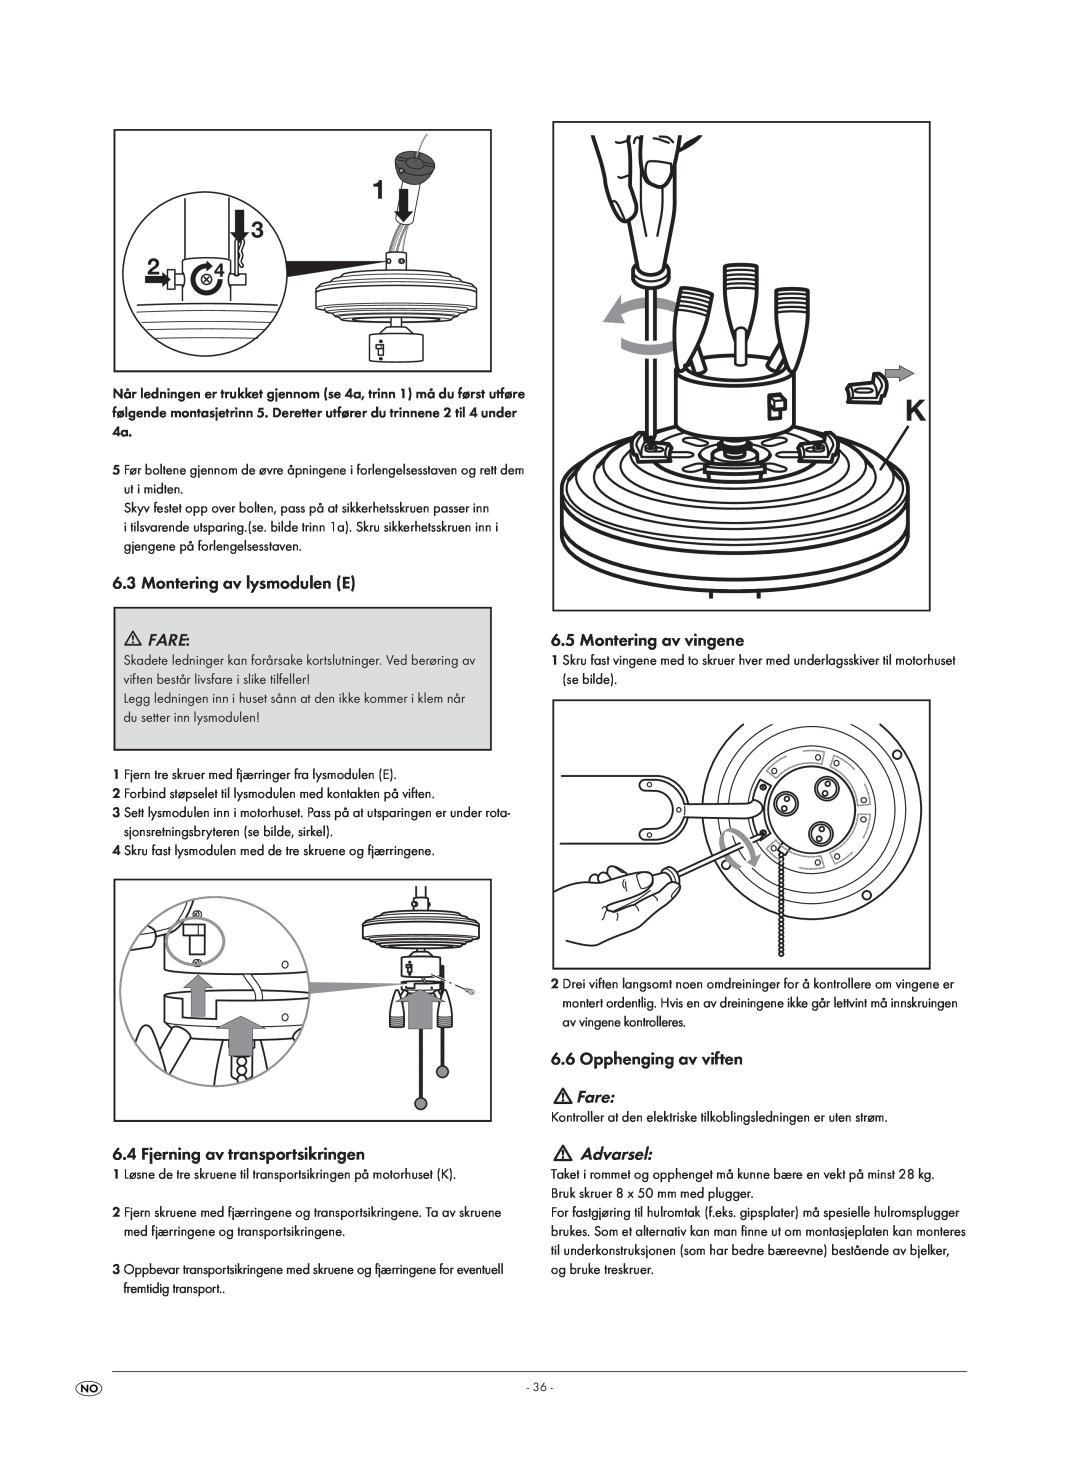 Kompernass KH 1150 manual Montering av lysmodulen E, Fare, Fjerning av transportsikringen, Montering av vingene, Advarsel 